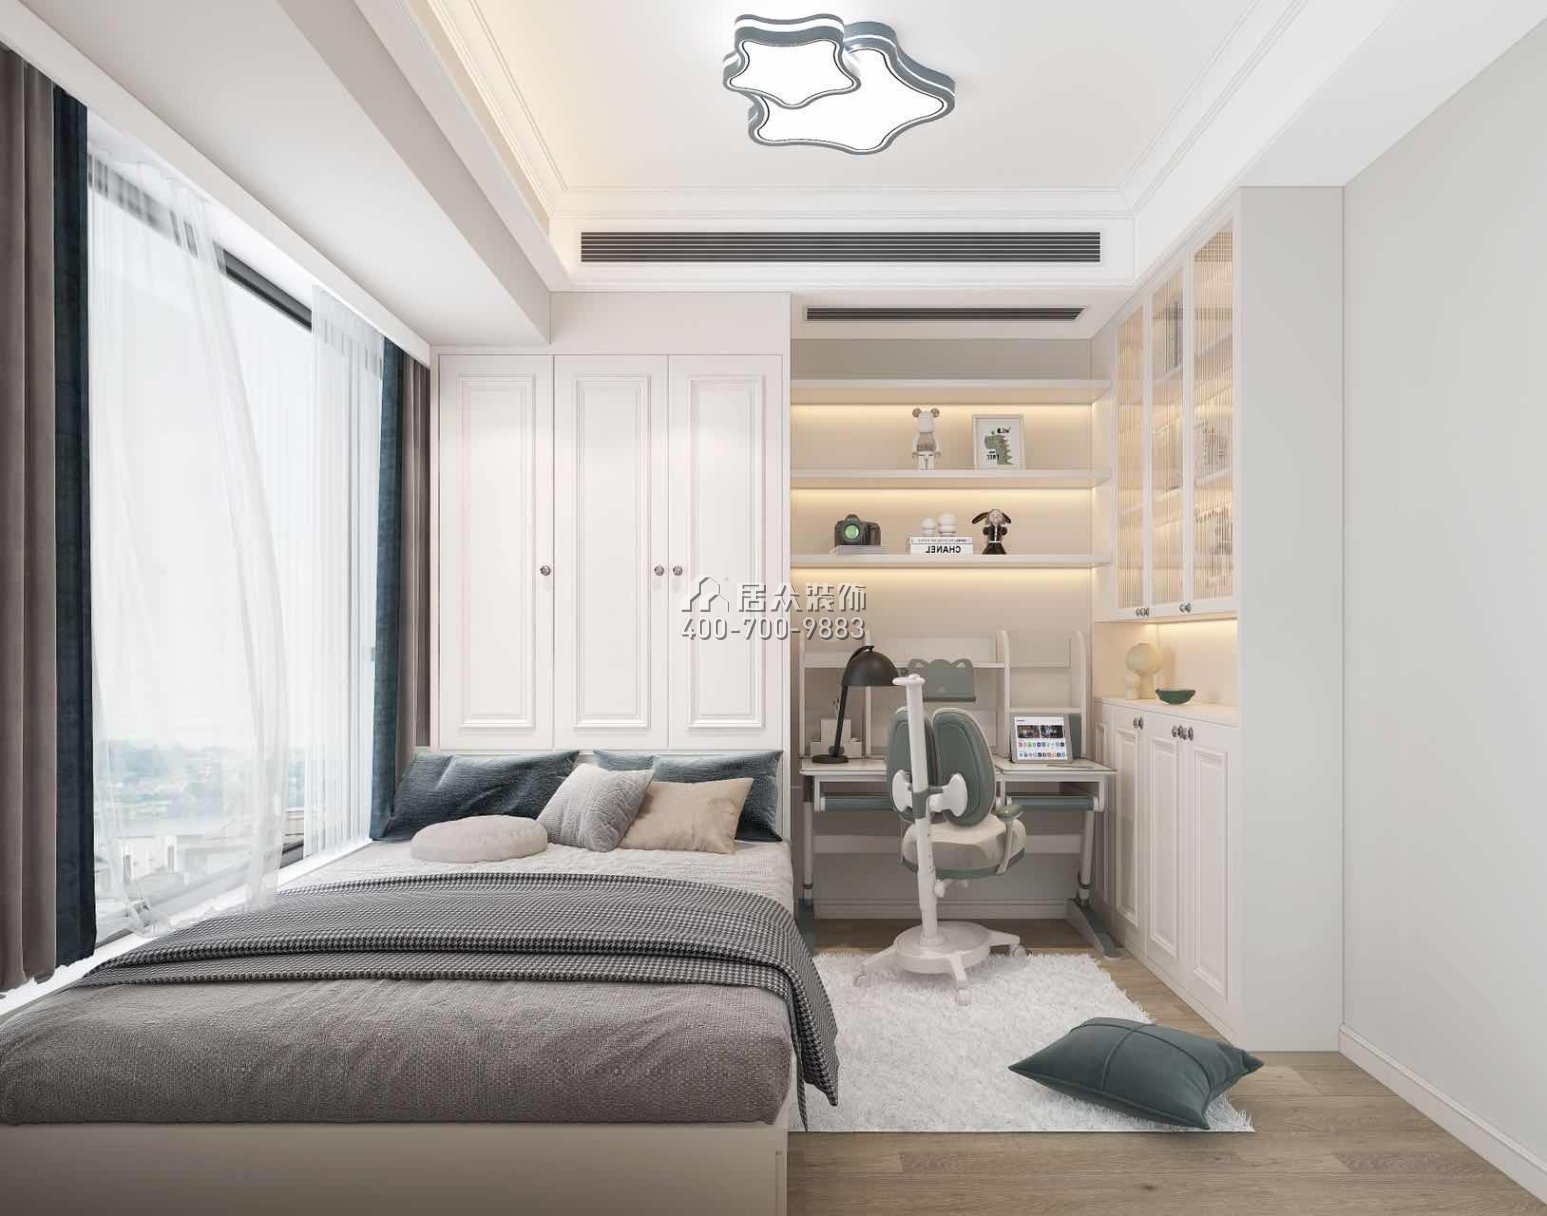 深铁阅山镜90平方米美式风格平层户型卧室装修效果图